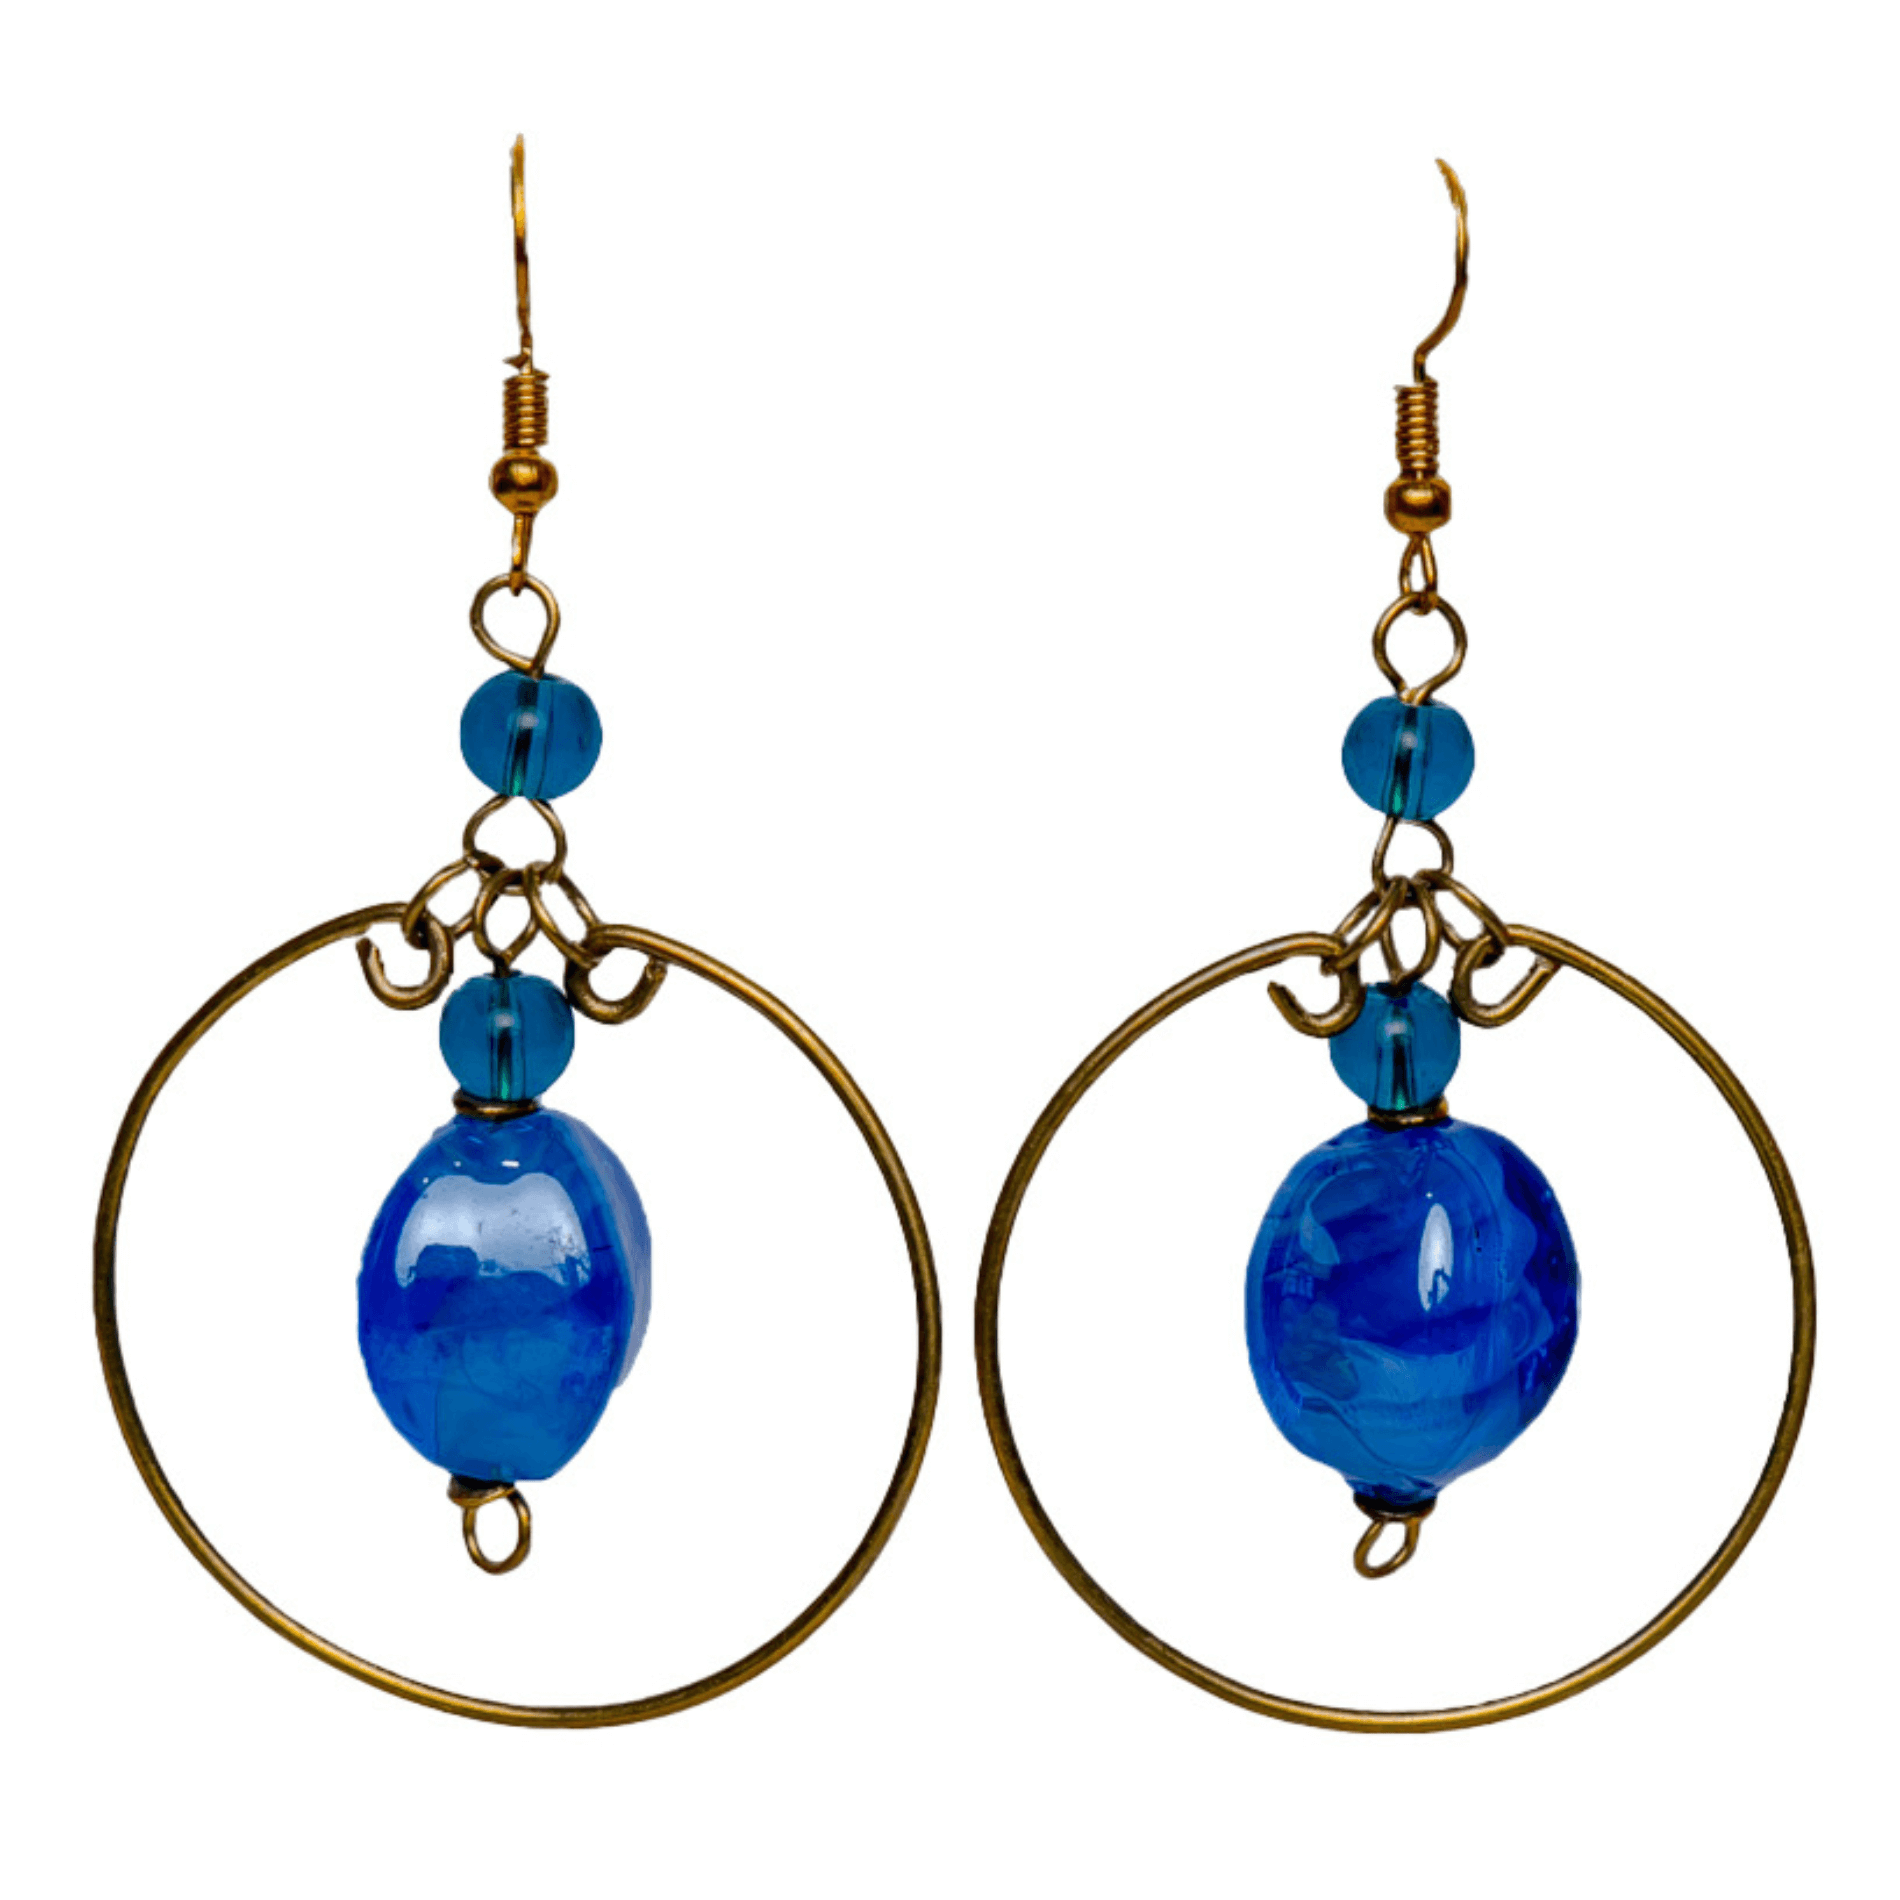 Big Hoop Earrings with blue beads